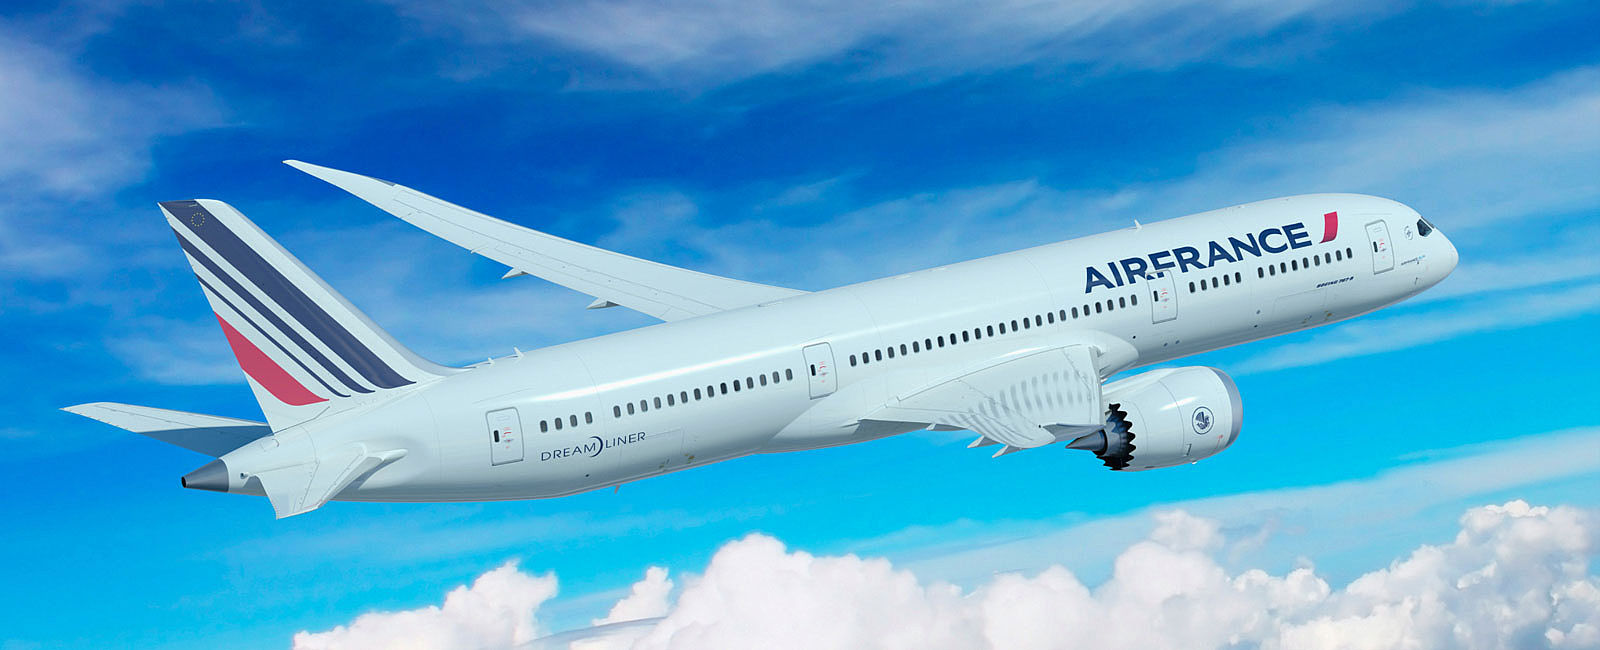 AIRLINE ANGEBOTE
 In Air France Business Class nach Dubai ab 1.219 Euro 
